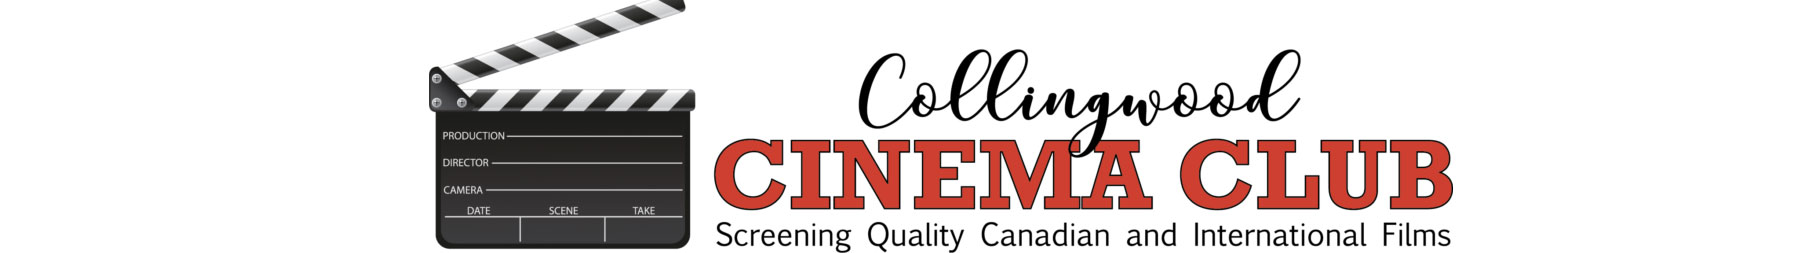 Collingwood Cinema Club 2021